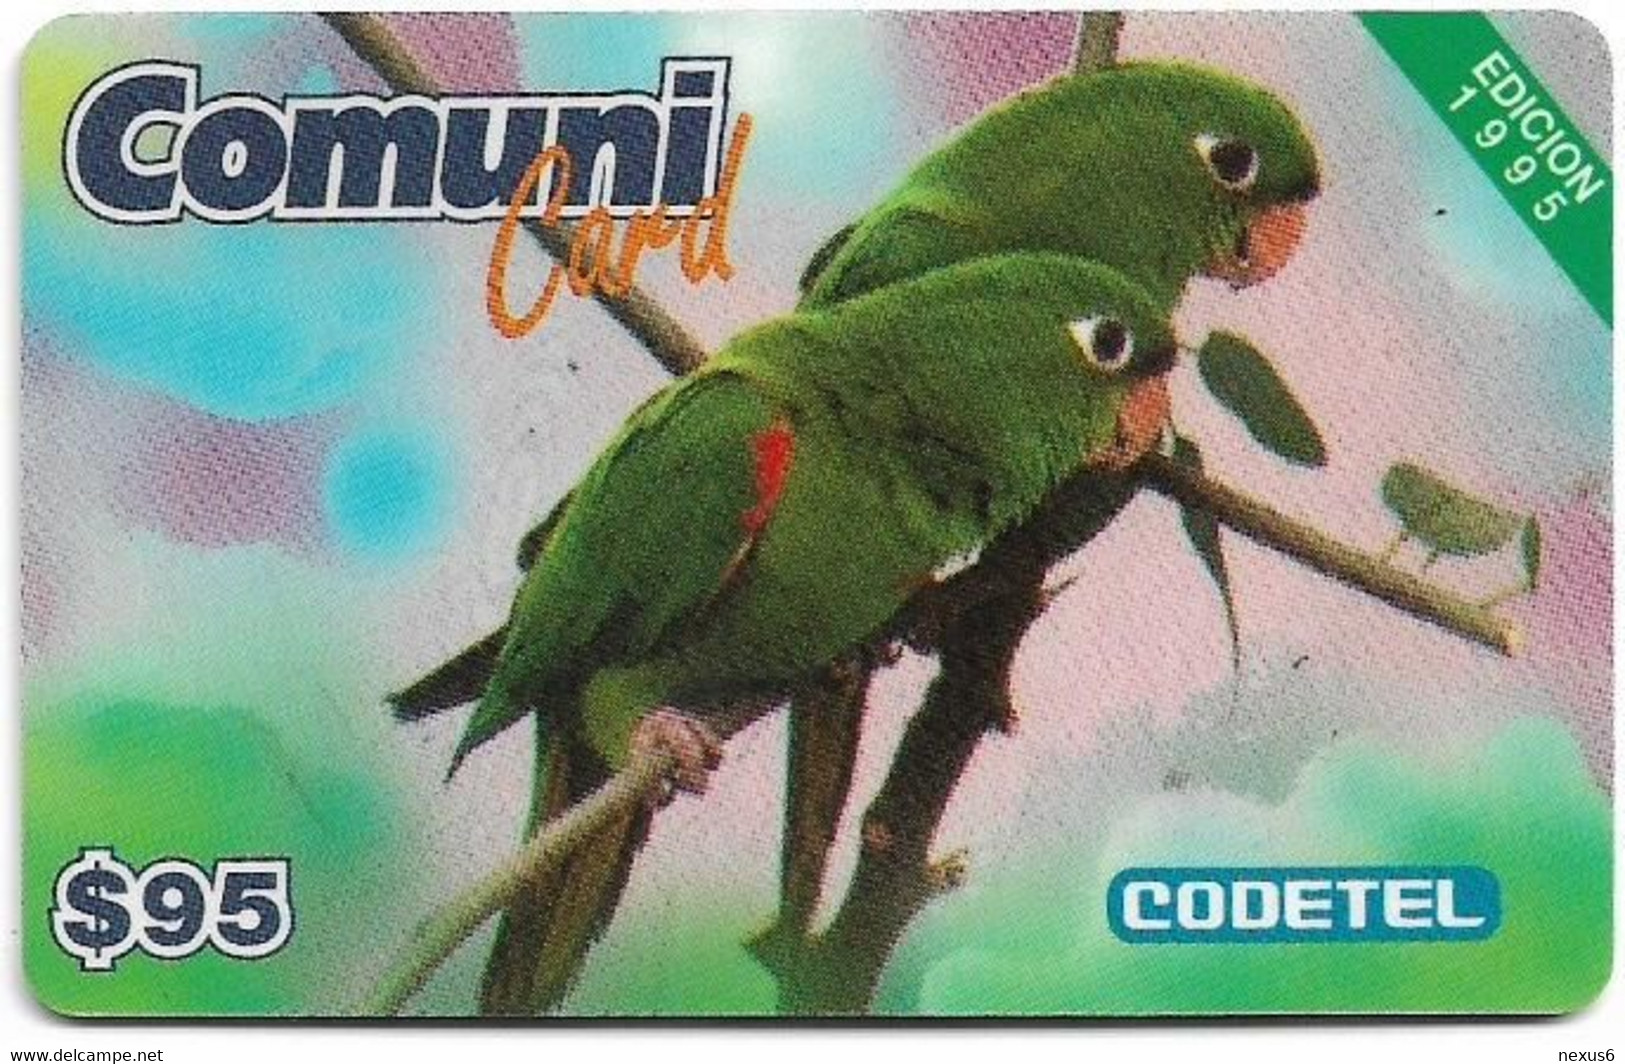 Dominican Rep. - Codetel (ComuniCard) El Perico, 2 Parrots, 1995 Edit. - Exp. 31.01.1996, Remote Mem. 95$, Used - Dominik. Republik